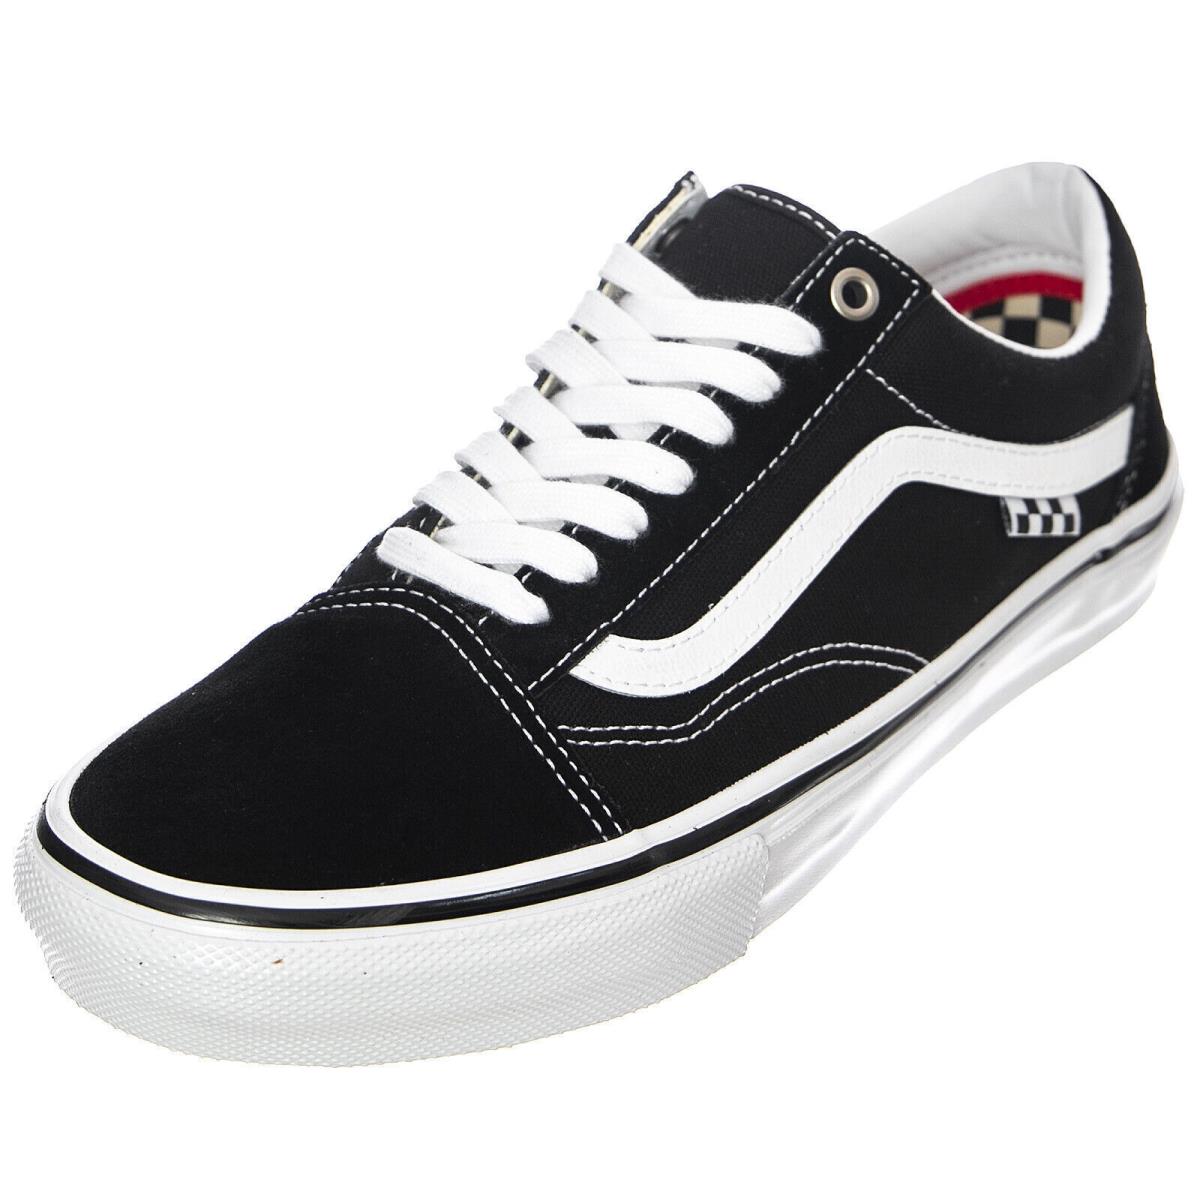 Vans Skate Old Skool Sneakers Black/white Classic Men`s Size 7.5 Women 9.0